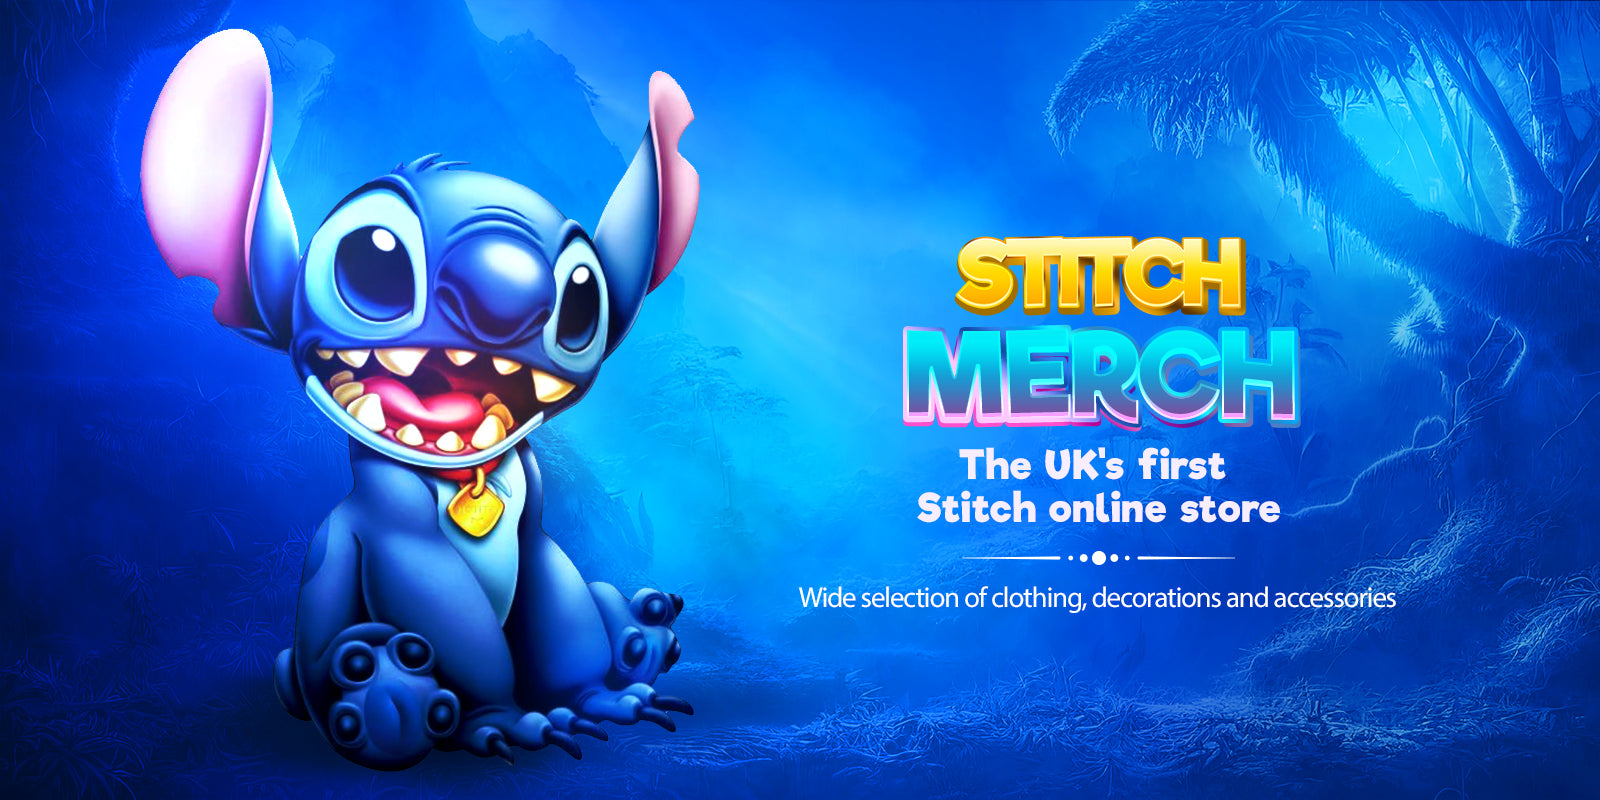 Stitch Merch : The #1 Stitch Shop in the UK